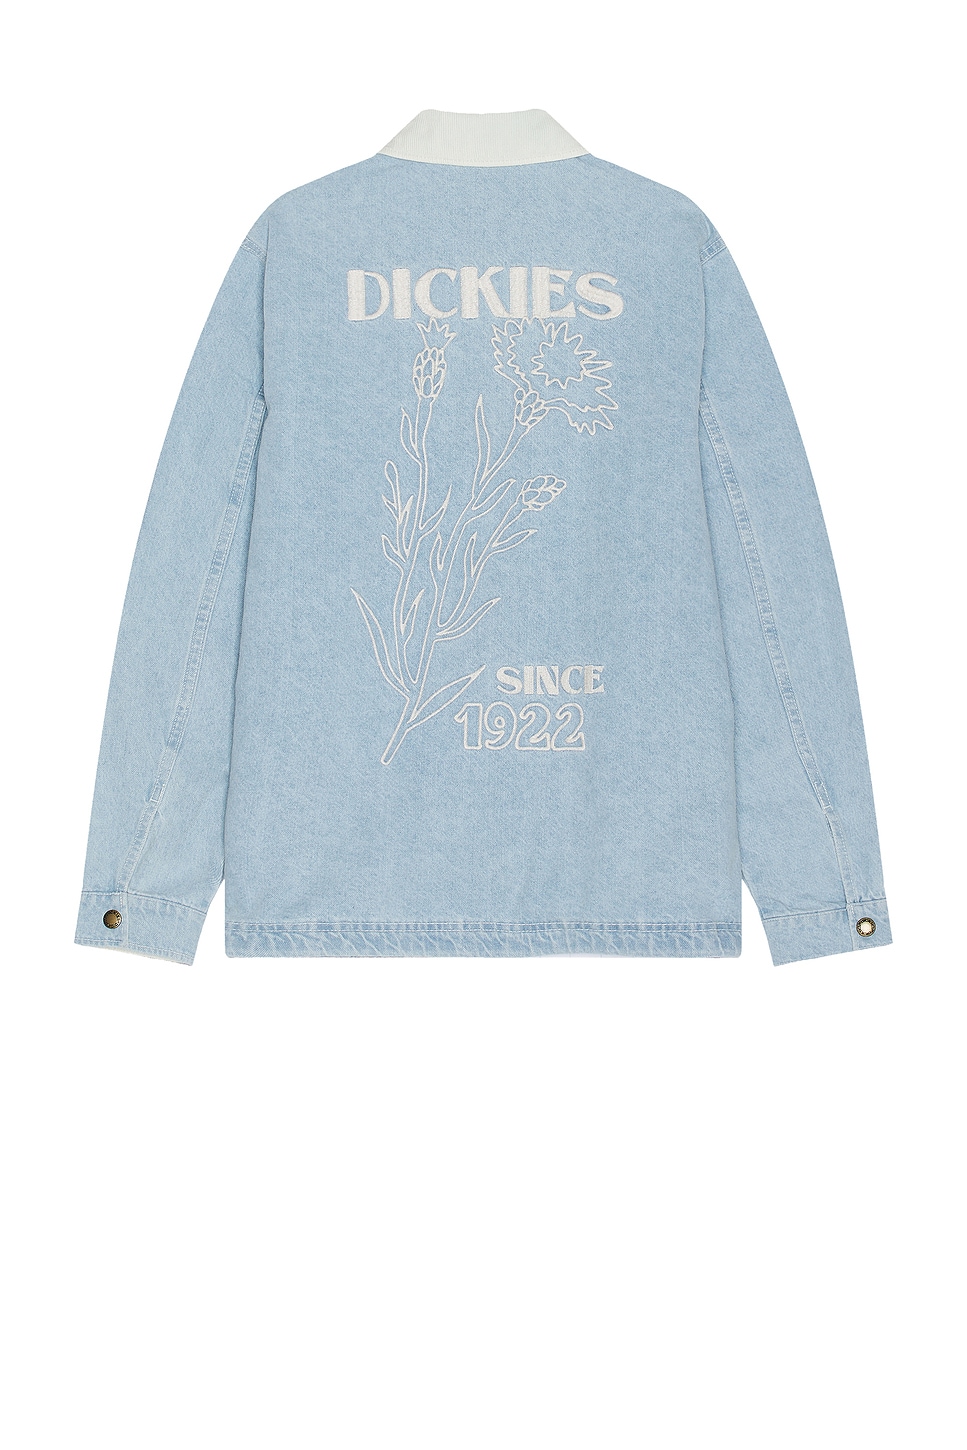 Image 1 of Dickies Herndon Jacket in Denim Vintage Wash